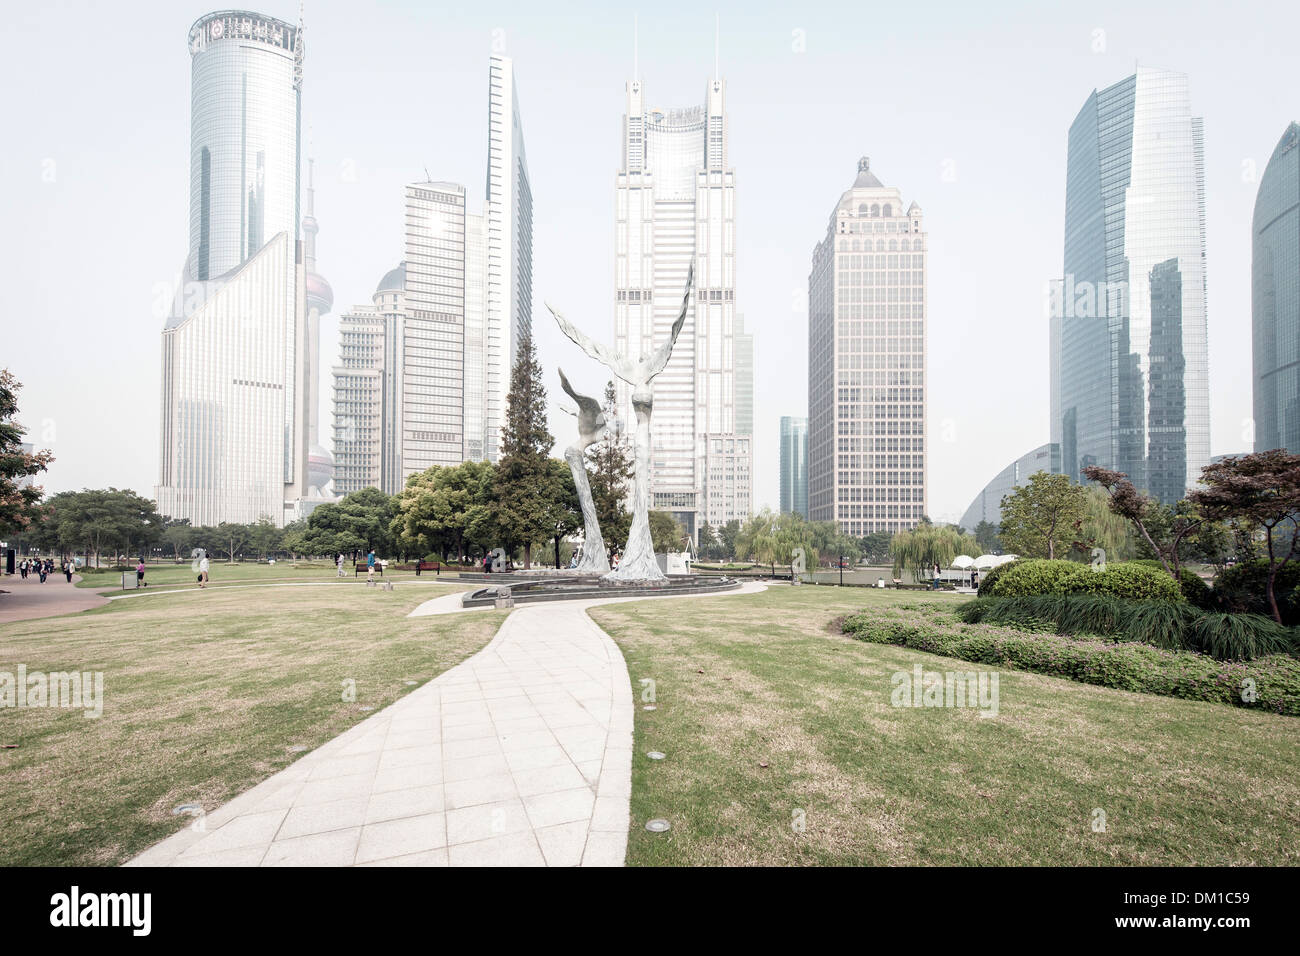 Sculptures et gratte-ciel, Green Park, Lujiazui Pudong Lujiazui,, Shanghai, Chine Banque D'Images